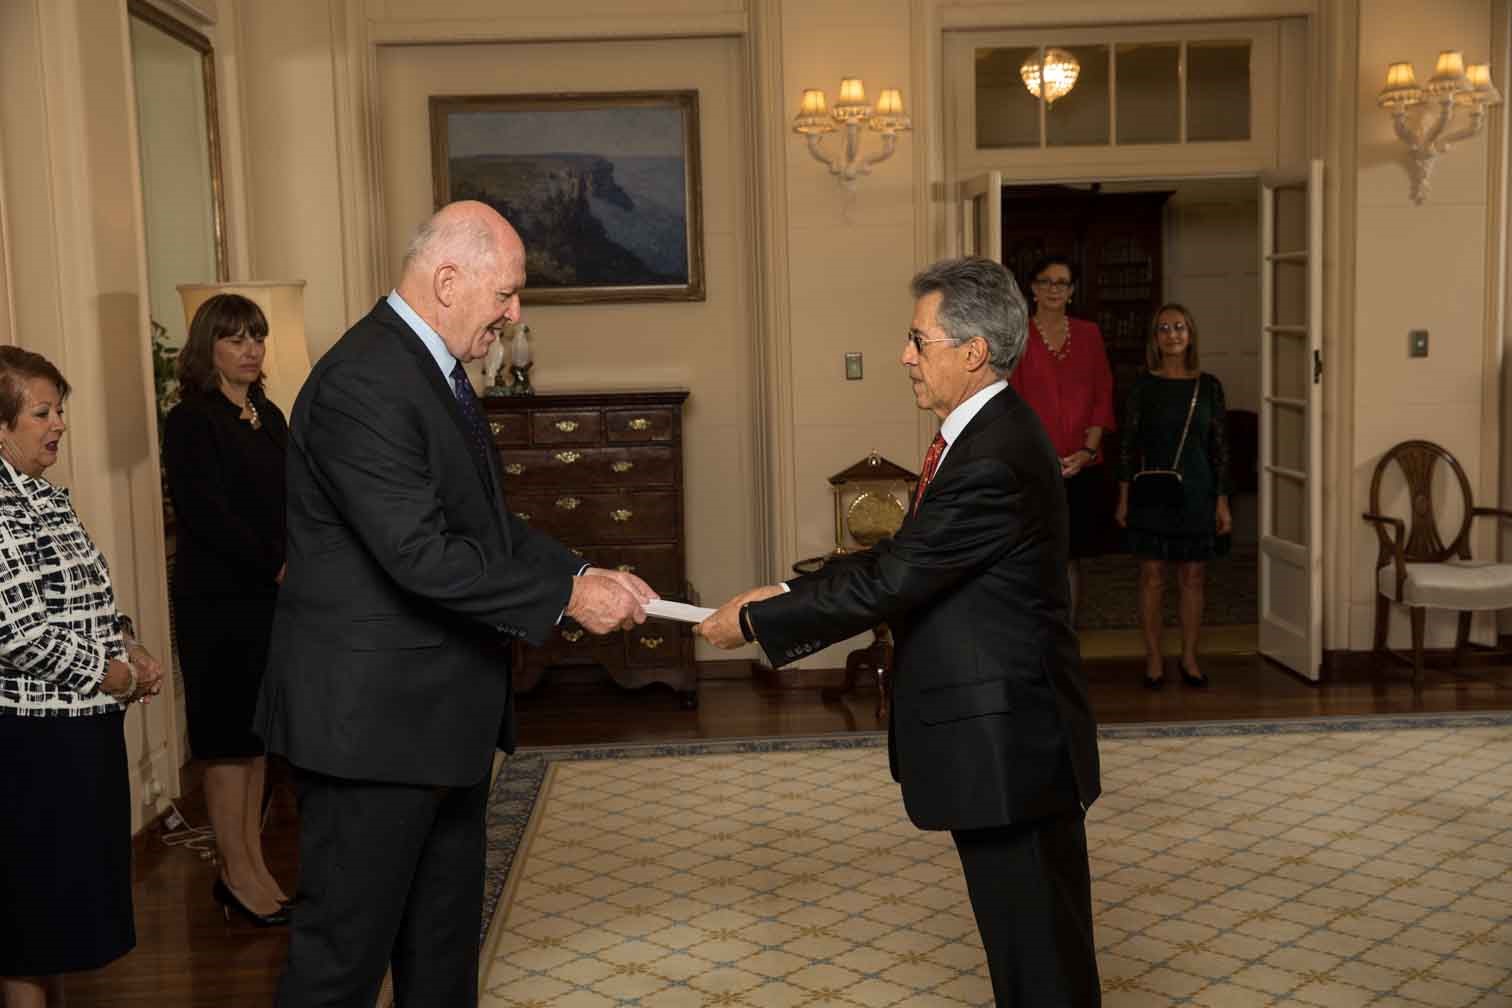 El Embajador de Colombia, Jaime Bueno Miranda, presentó cartas credenciales ante el Gobernador General de Australia